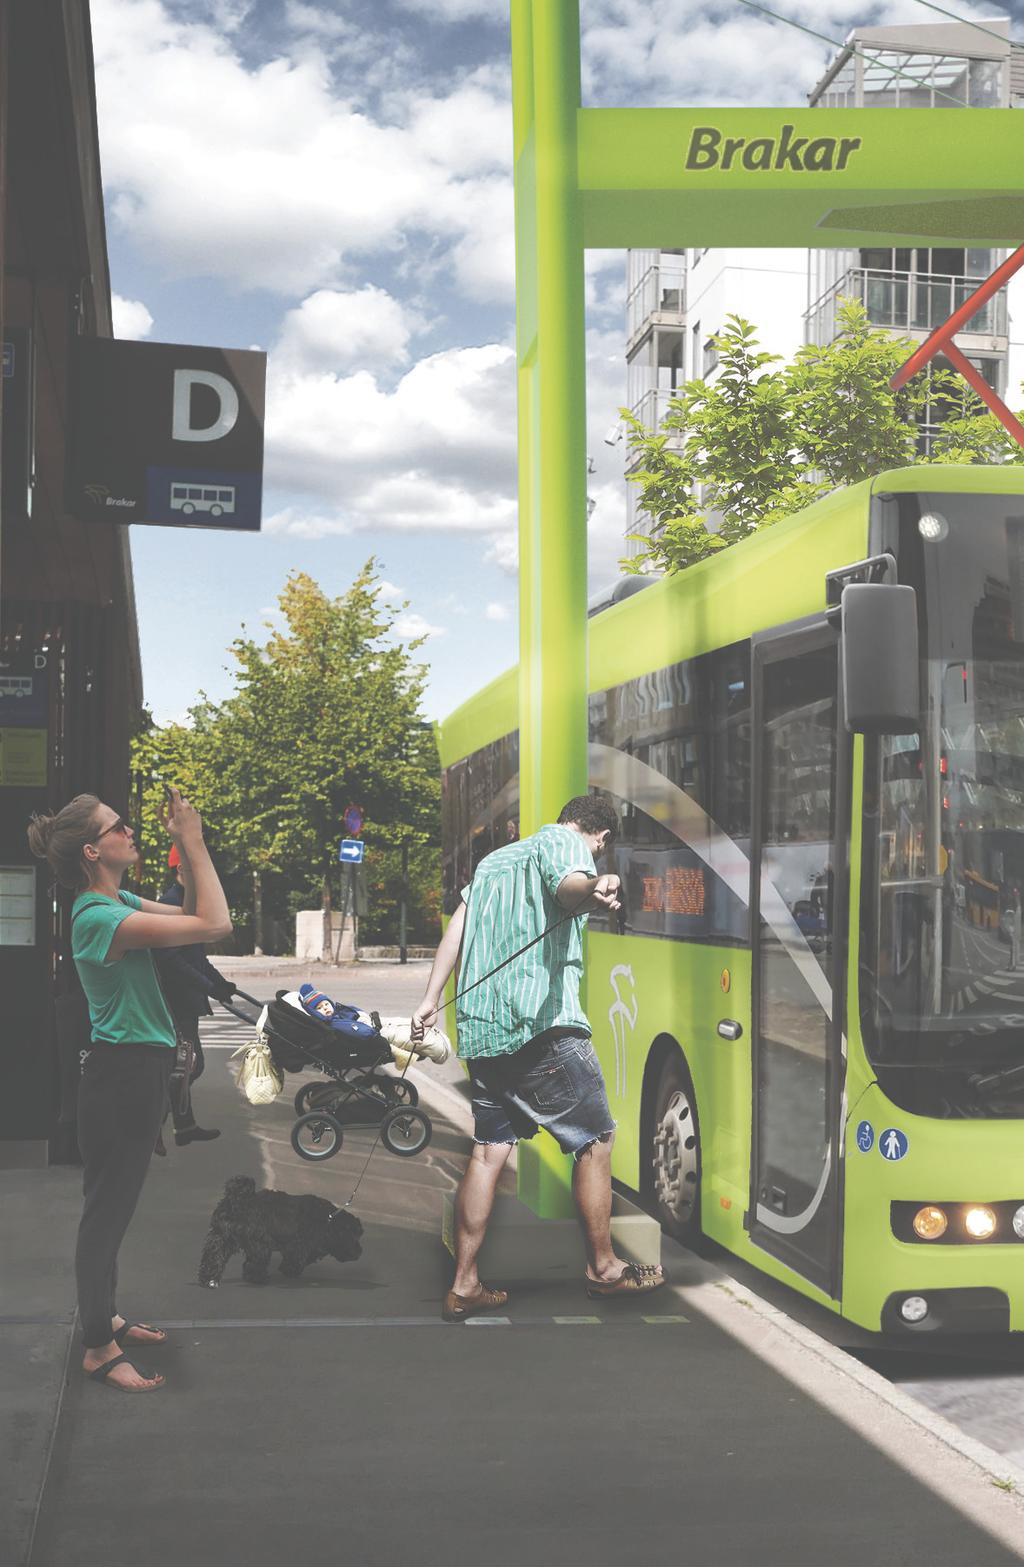 4 5 Flere kunder, mer fornøyde kunder og mer miljøvennlig kollektivtrafikk viktigste oppgave er å få K ollektivtrafikkens flere til å reise kollektivt.